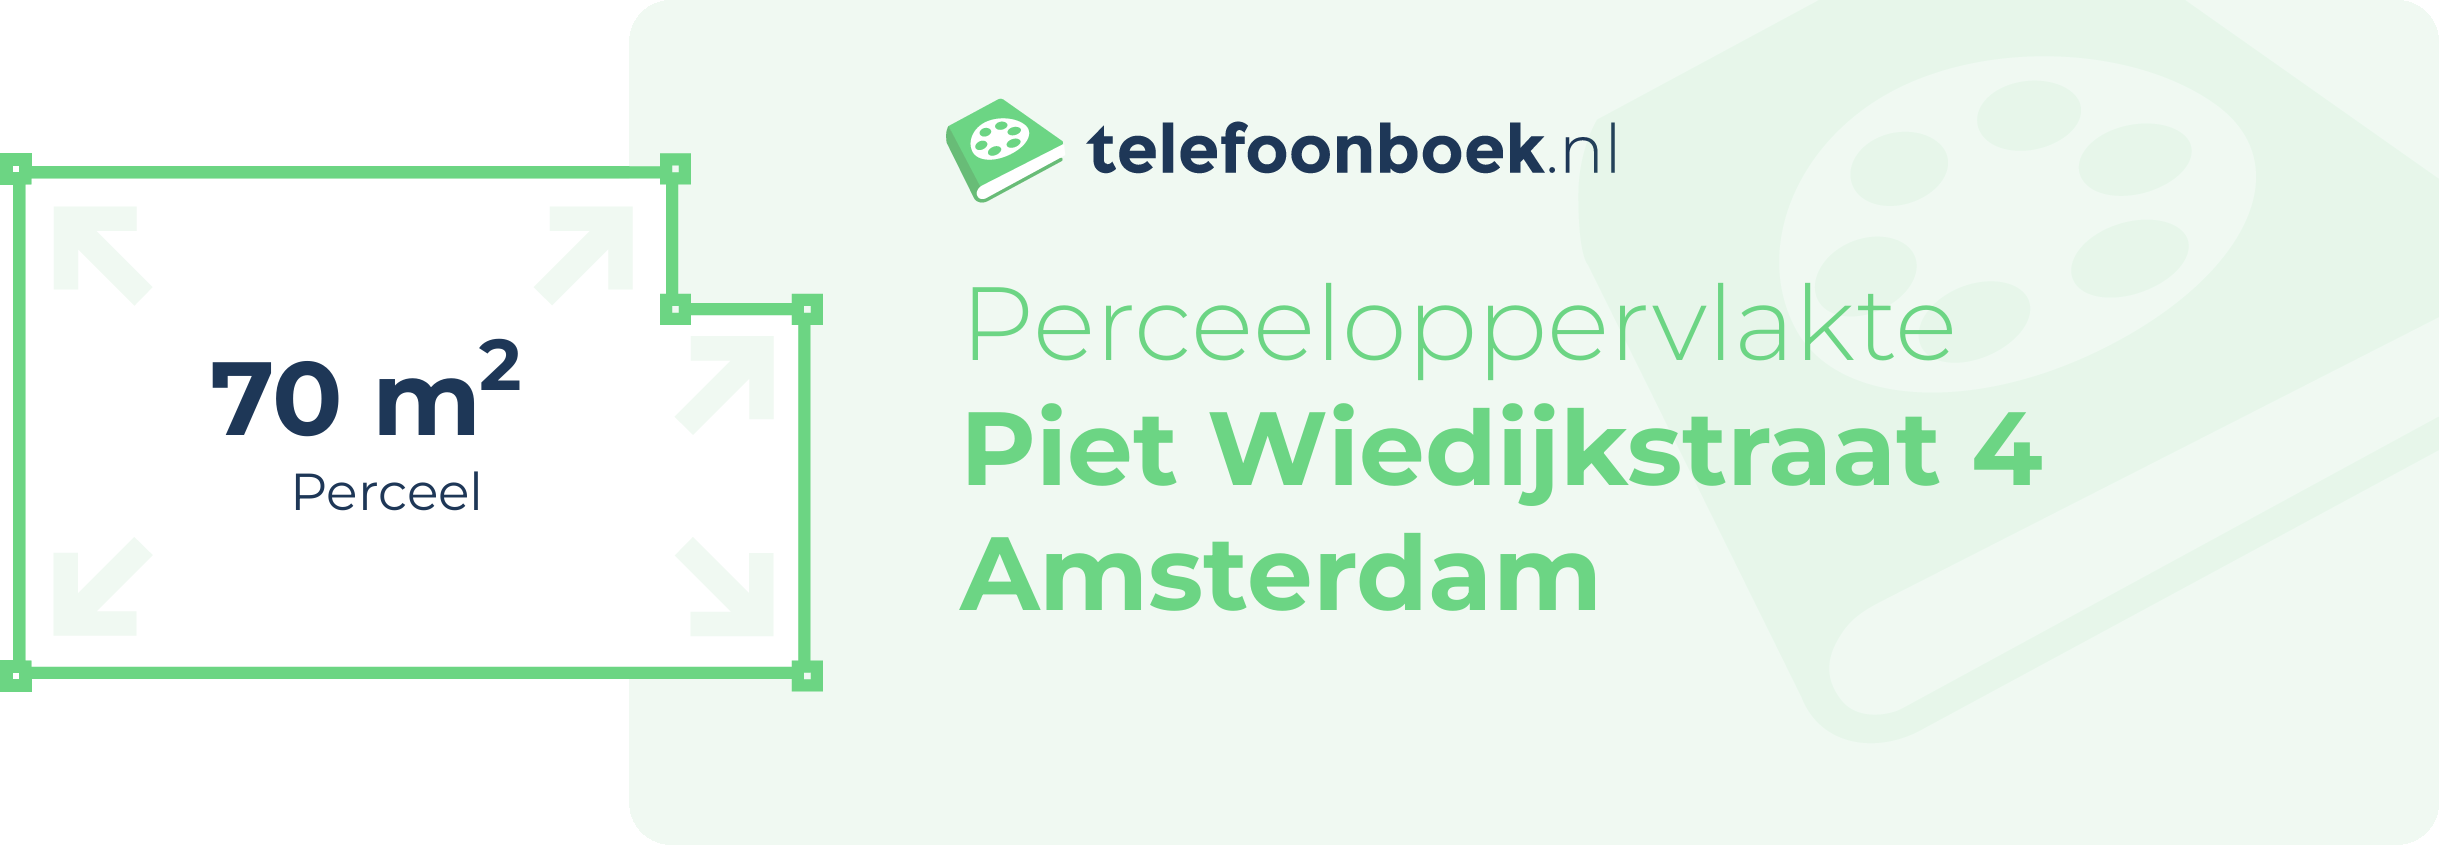 Perceeloppervlakte Piet Wiedijkstraat 4 Amsterdam